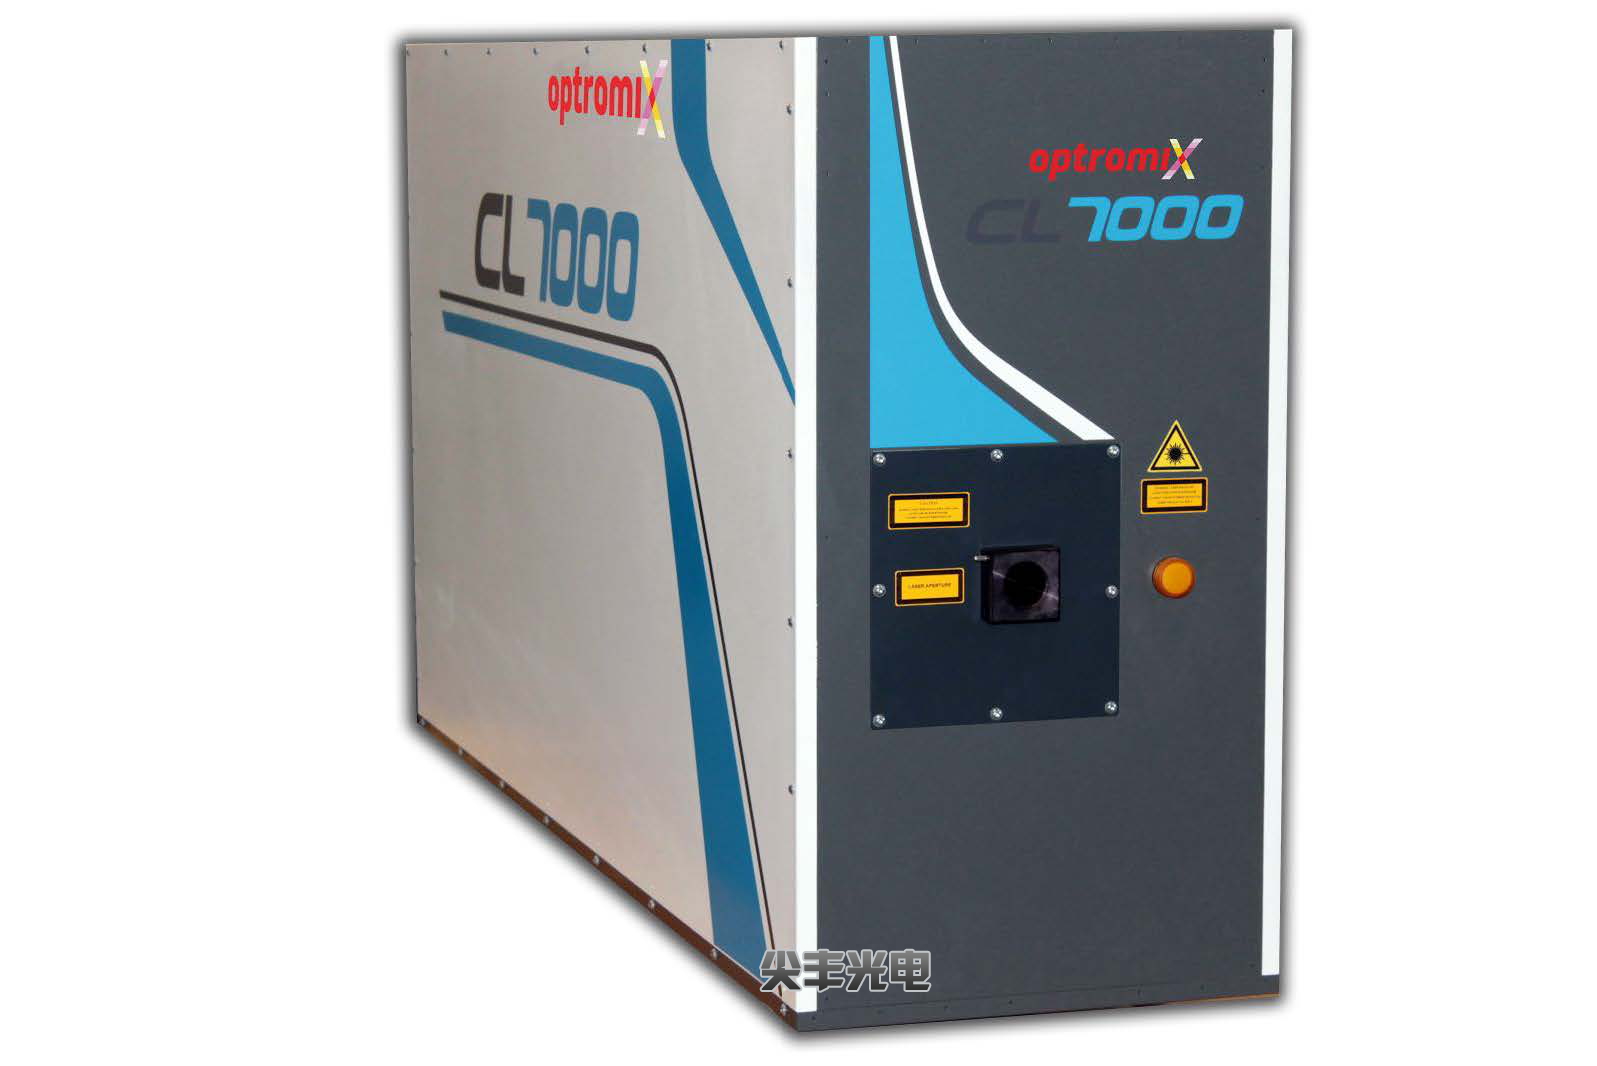  ﻿UV Excimer CL 7000k laser series